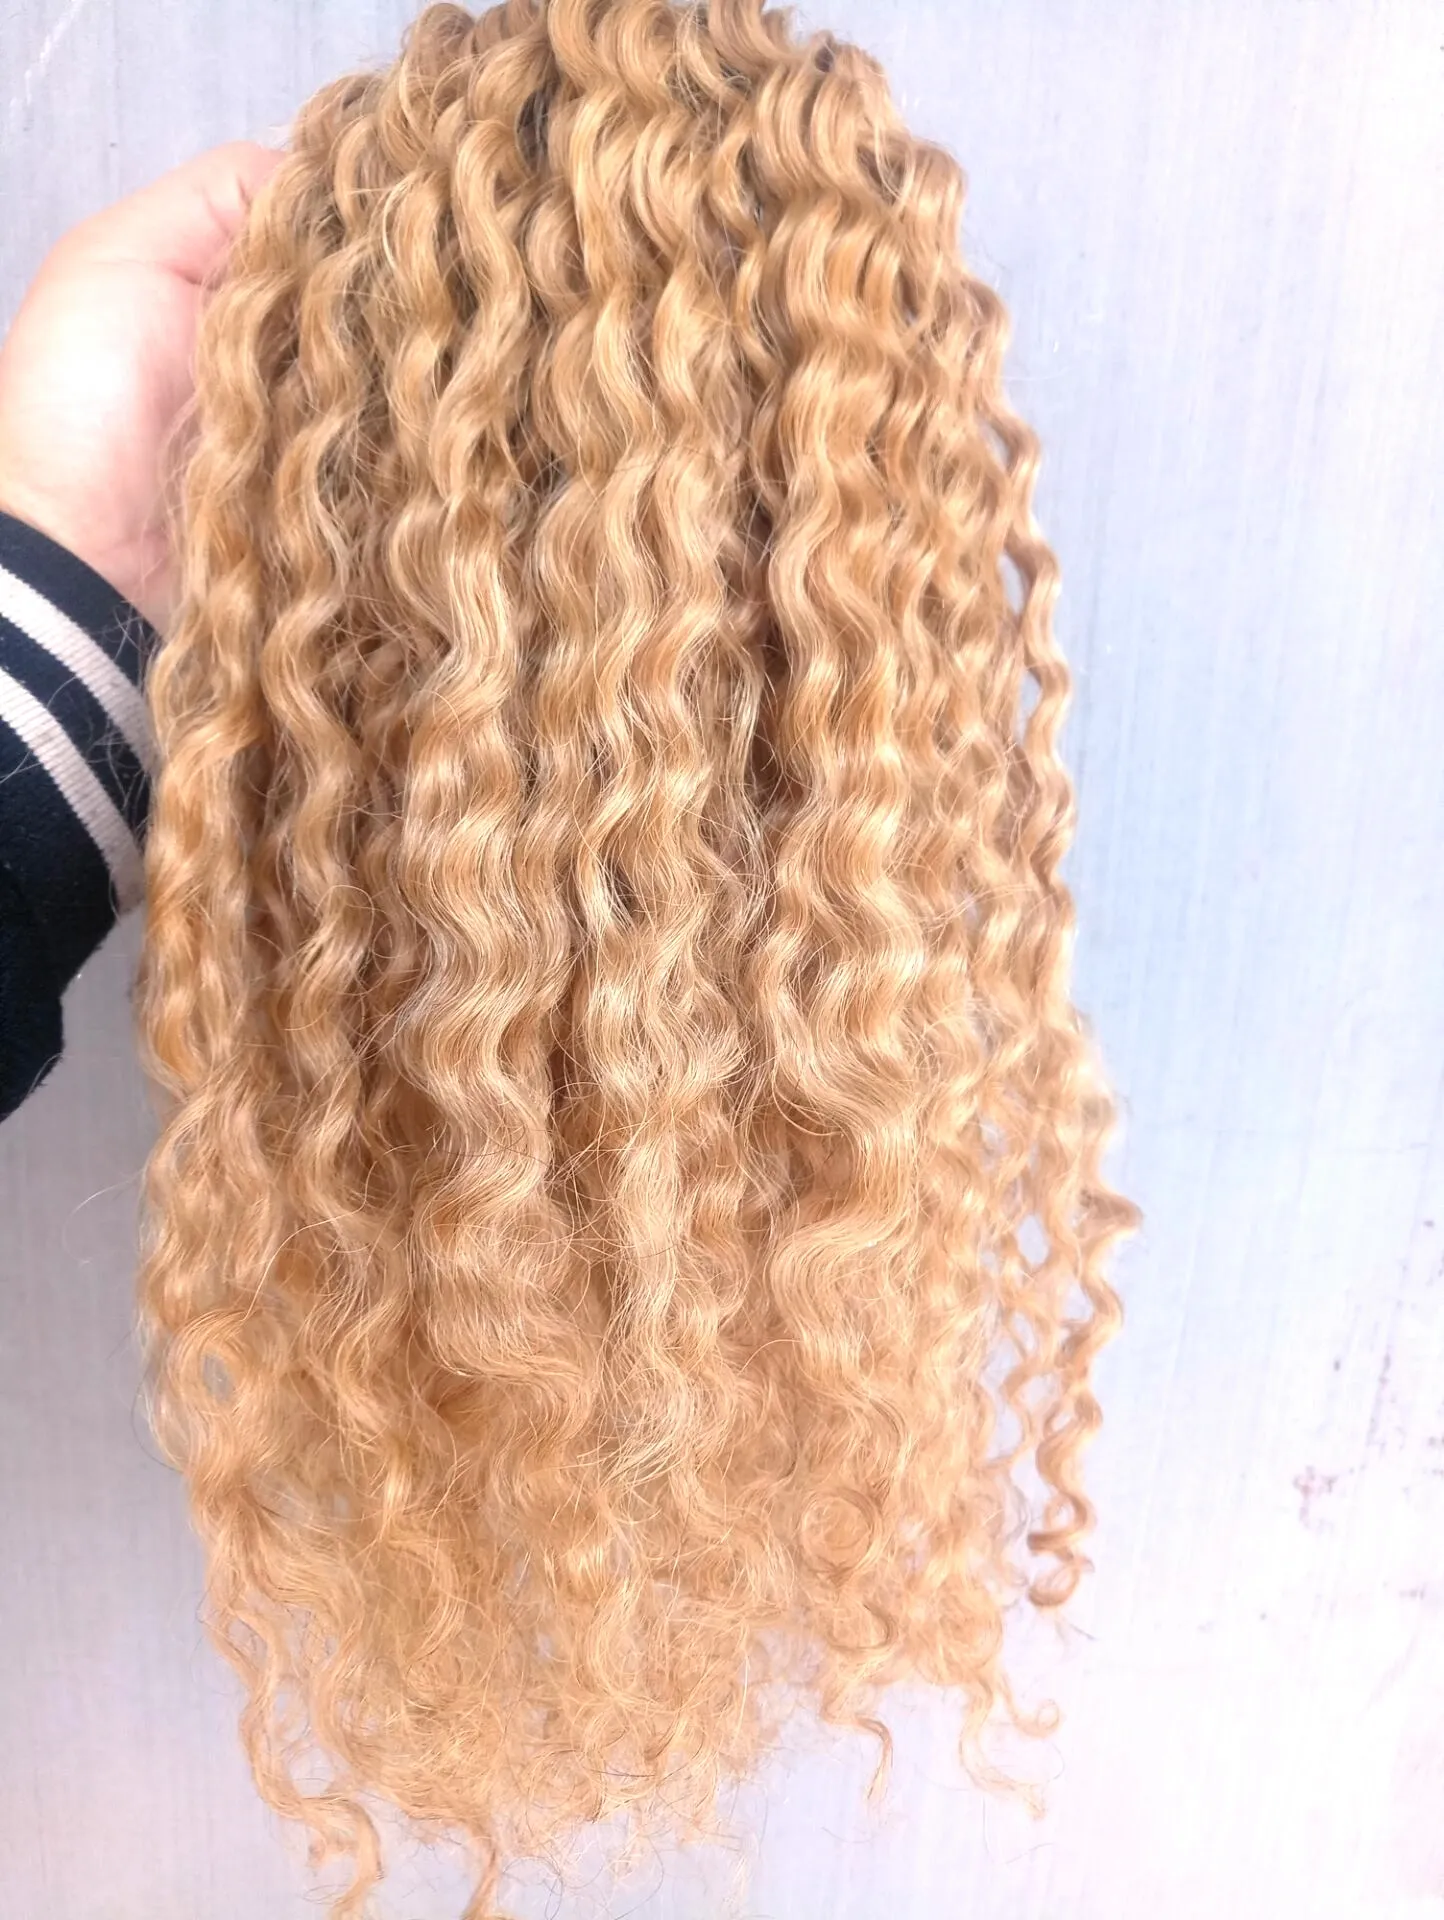 NOWOŚĆ Brazylijskie ludzkie dziewicze Remy Curly Hair Extensions Dark Blonde 27# Kolor włosy WEFT 2-3 Bundles dla pełnej głowy